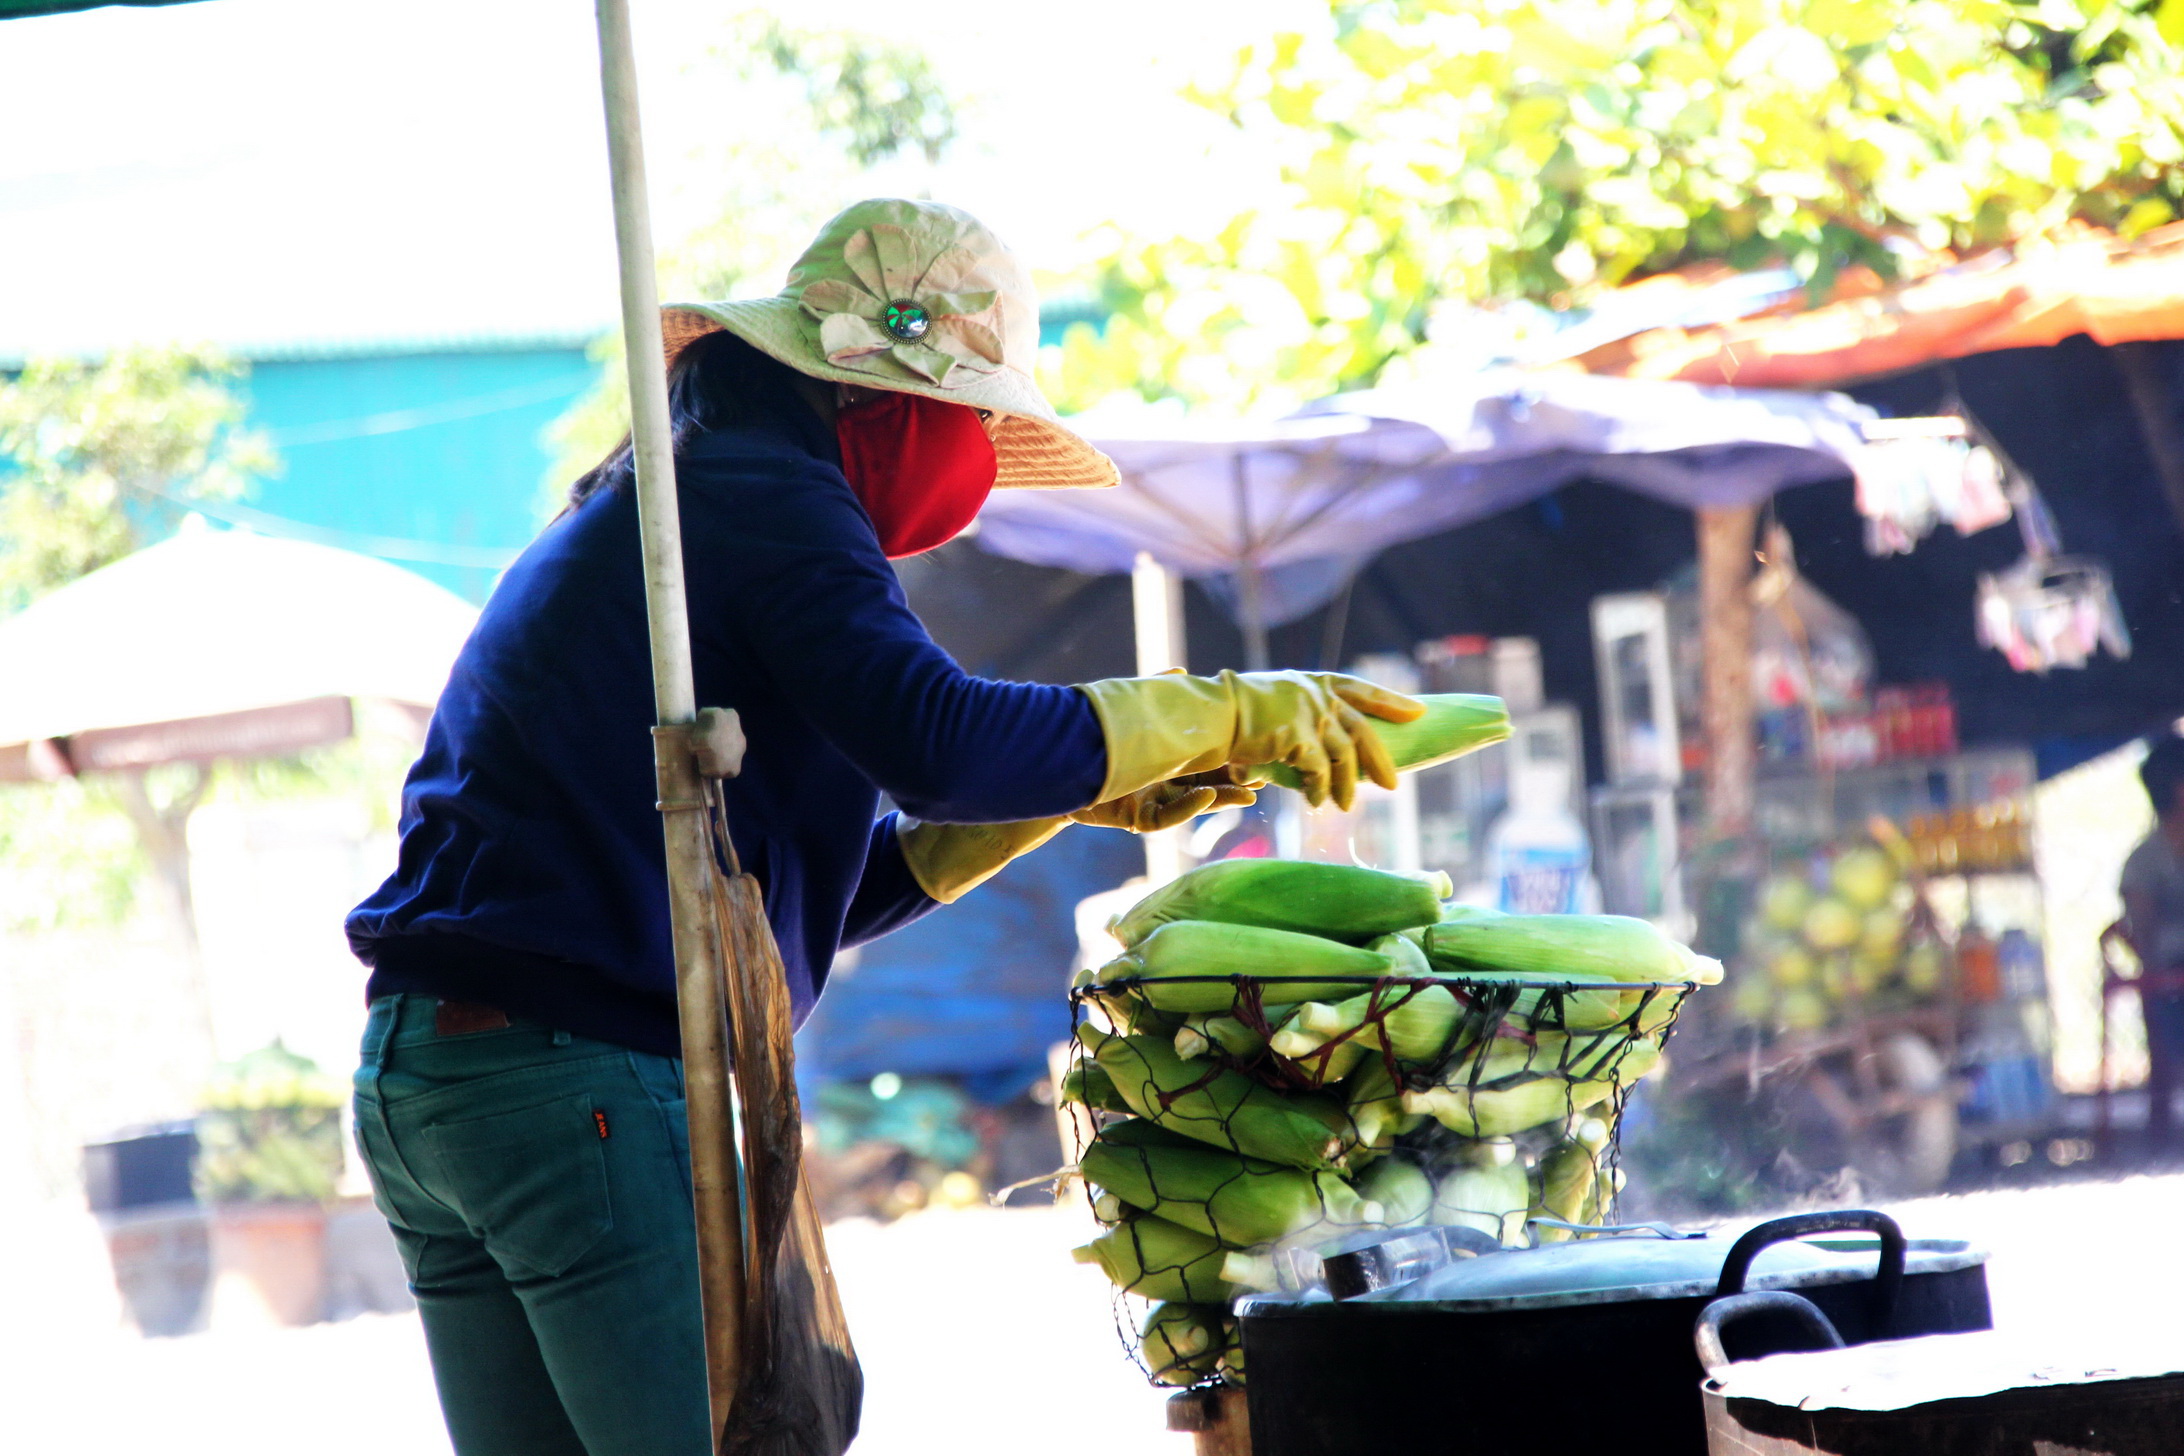 Bắp luộc, bắp nướng - Món ngon dễ ăn, dễ tìm ở Nha Trang - 3